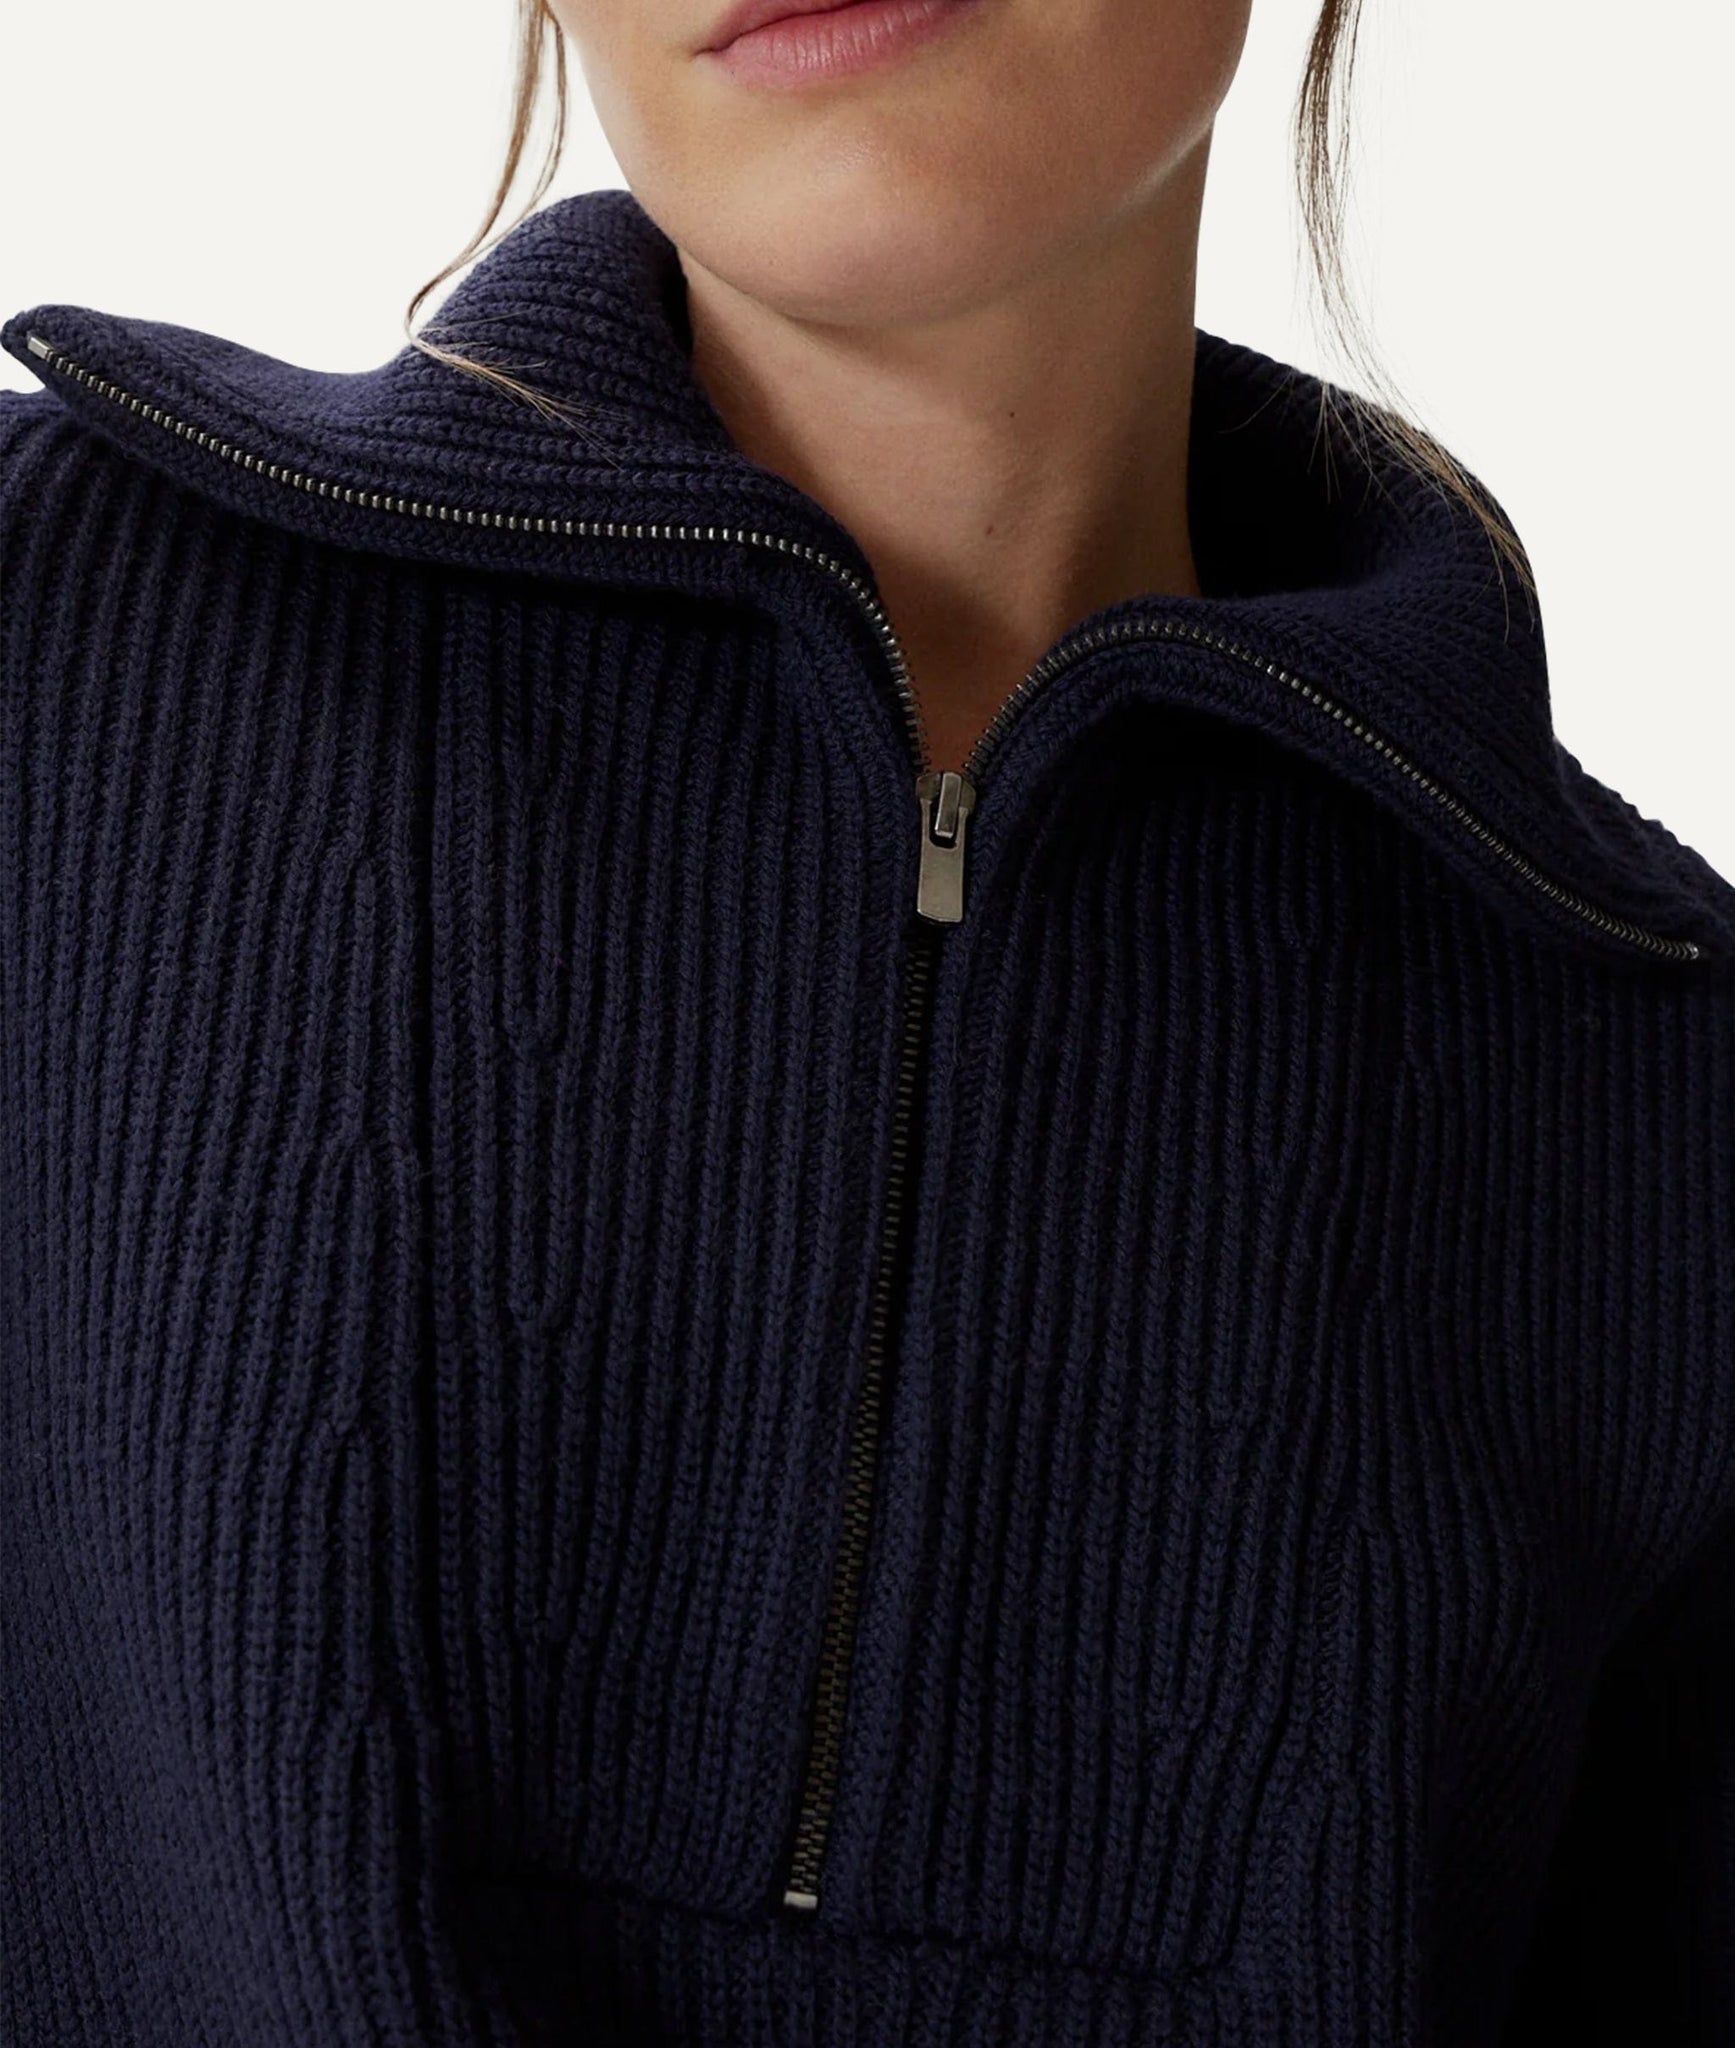 The Merino Wool Half-zip Sweater